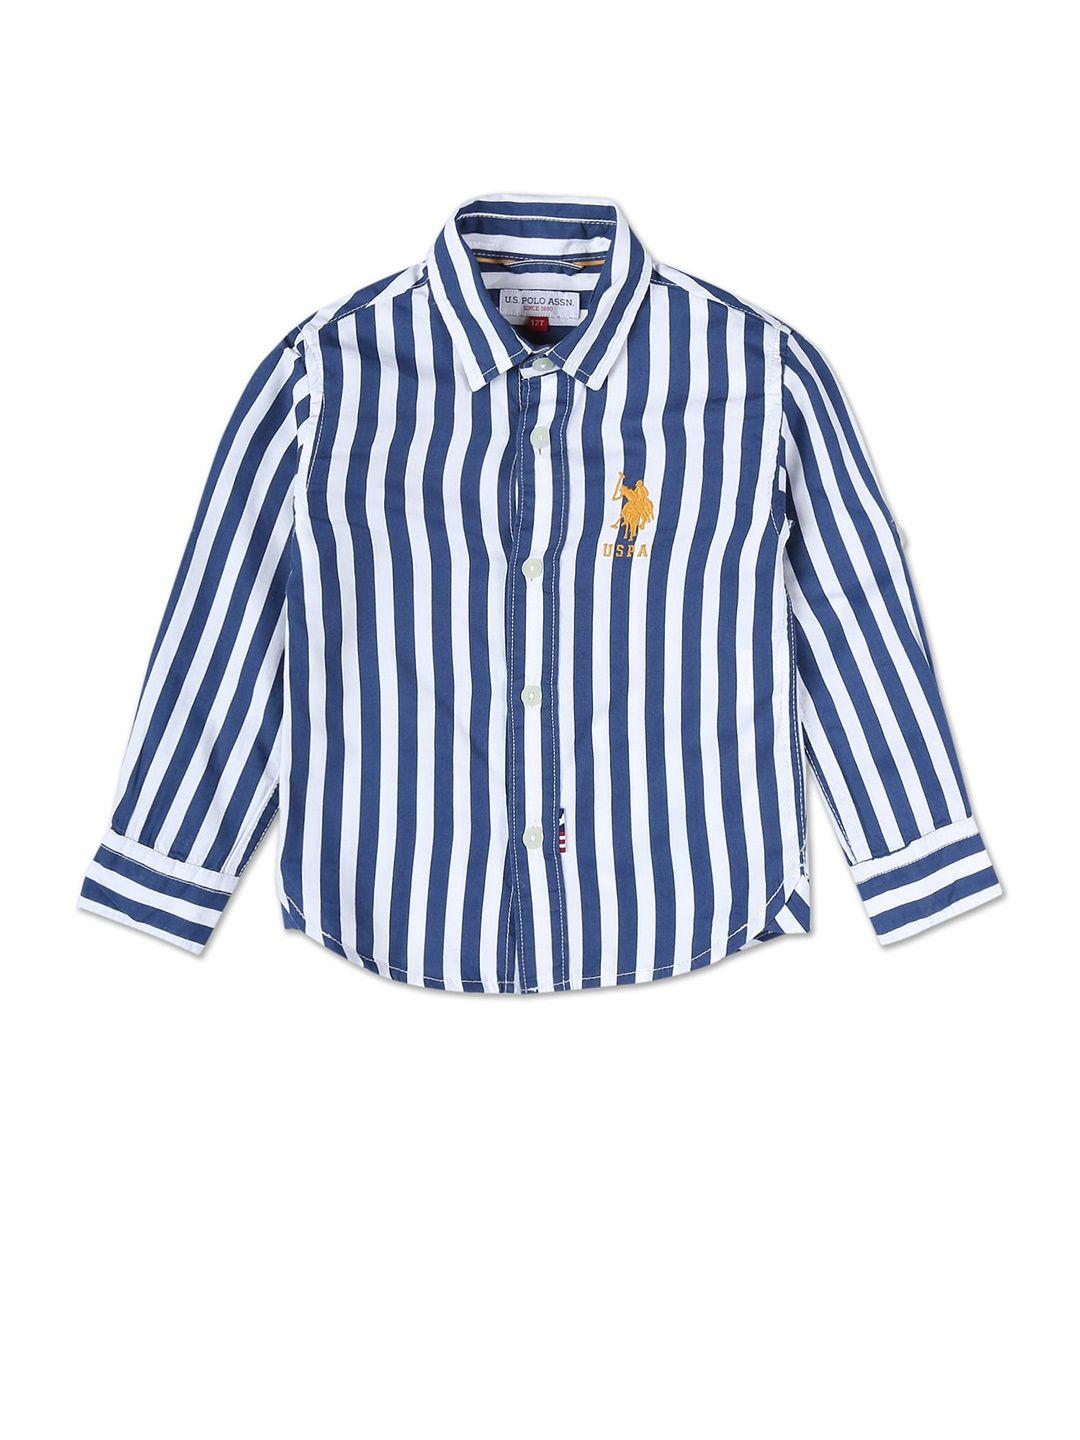 u.s.-polo-assn.-kids-boys-regular-fit-striped-casual-shirt